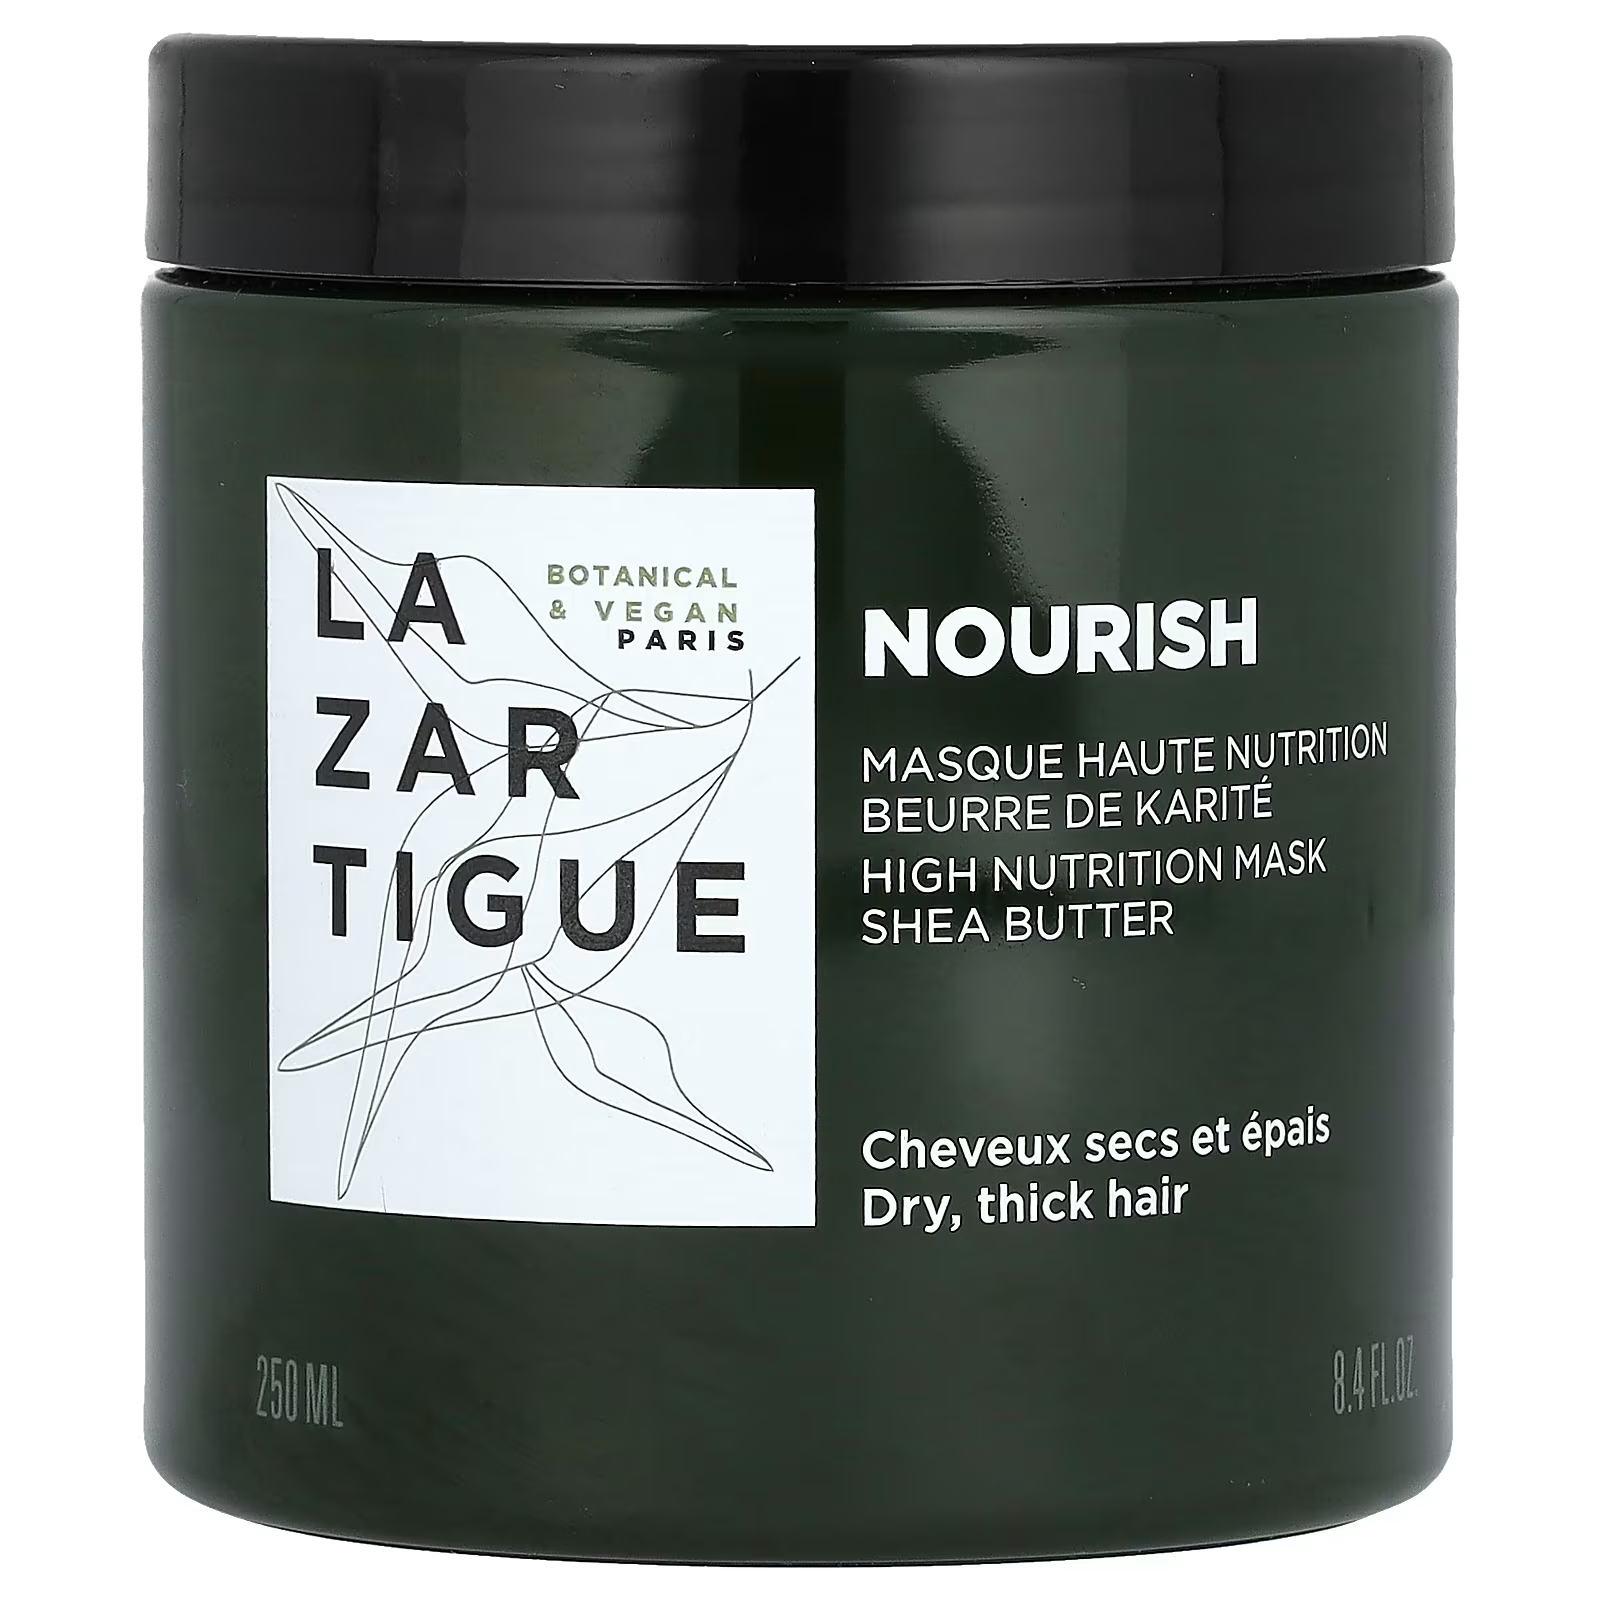 Lazartigue Nourish High Nutrition Маска для волос с маслом ши, 8,4 жидких унций (250 мл)